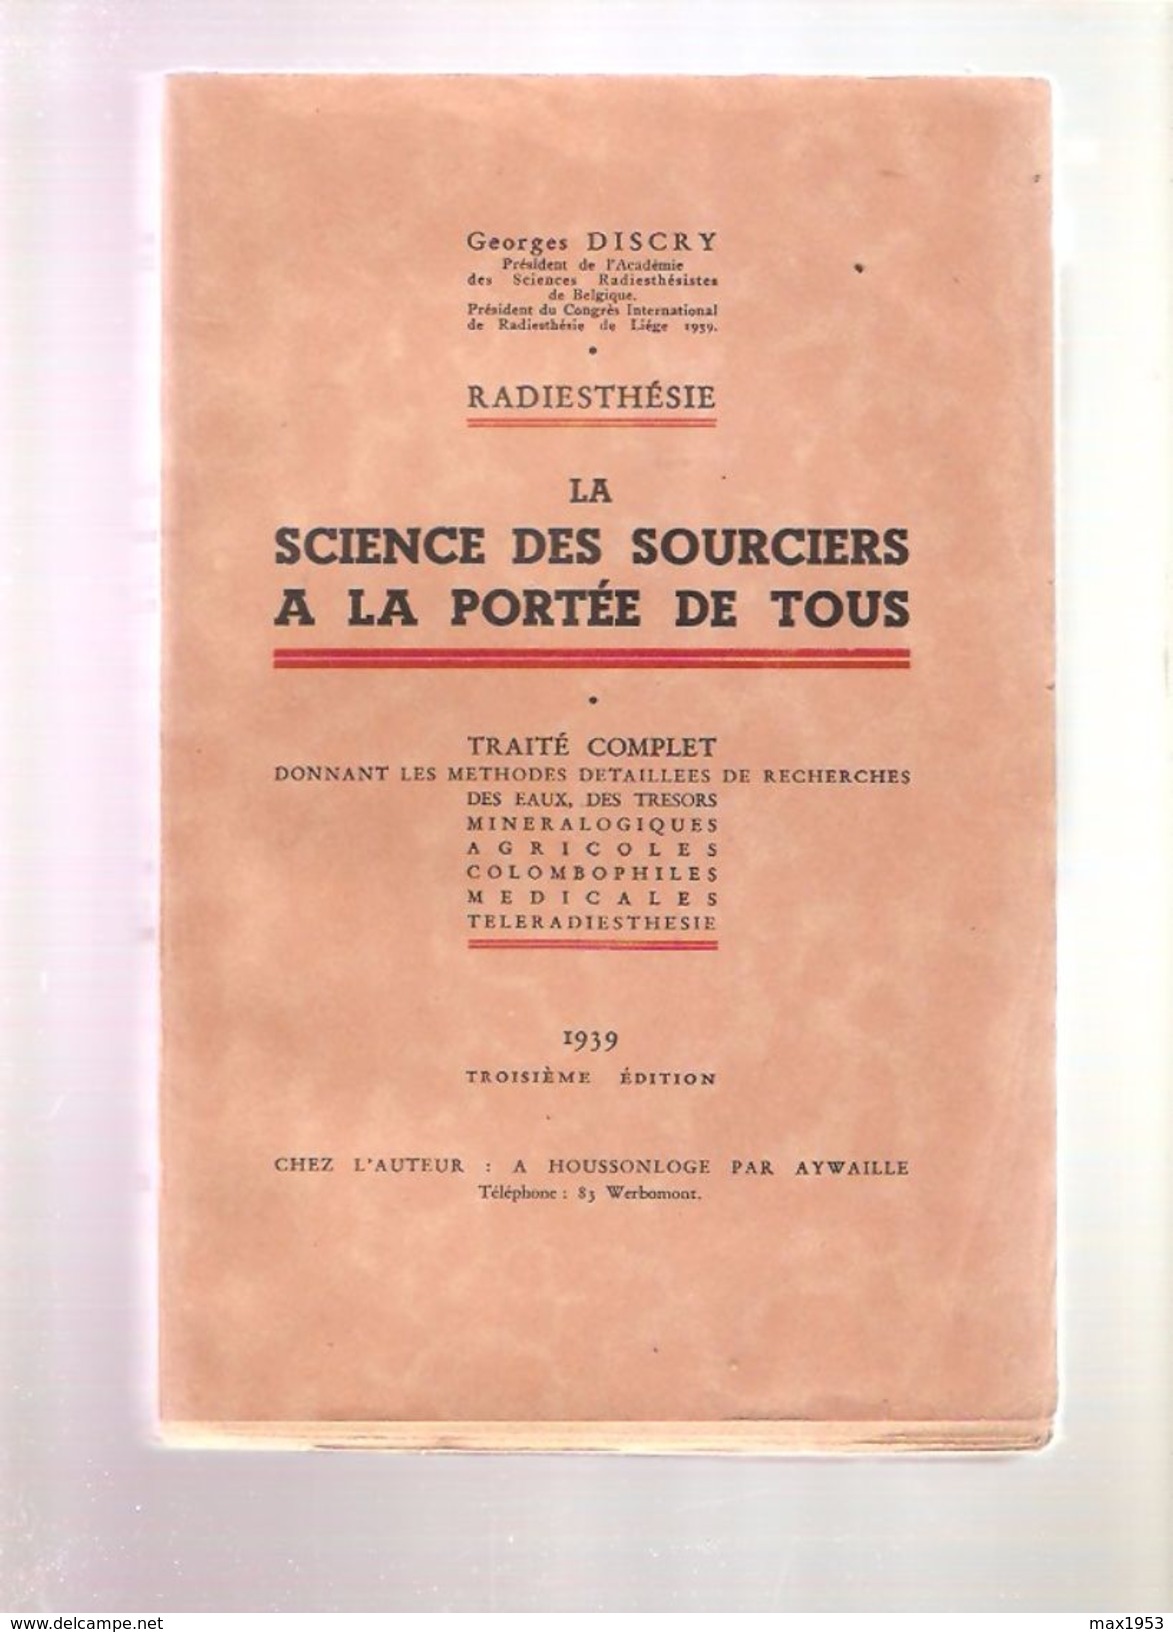 Georges DISCRY - RADIESTHESIE LA SCIENCE DES SOURCIERS A LA PORTEE DE TOUS - Chez L'Auteur , Houssonloge, 1939 - Esotérisme